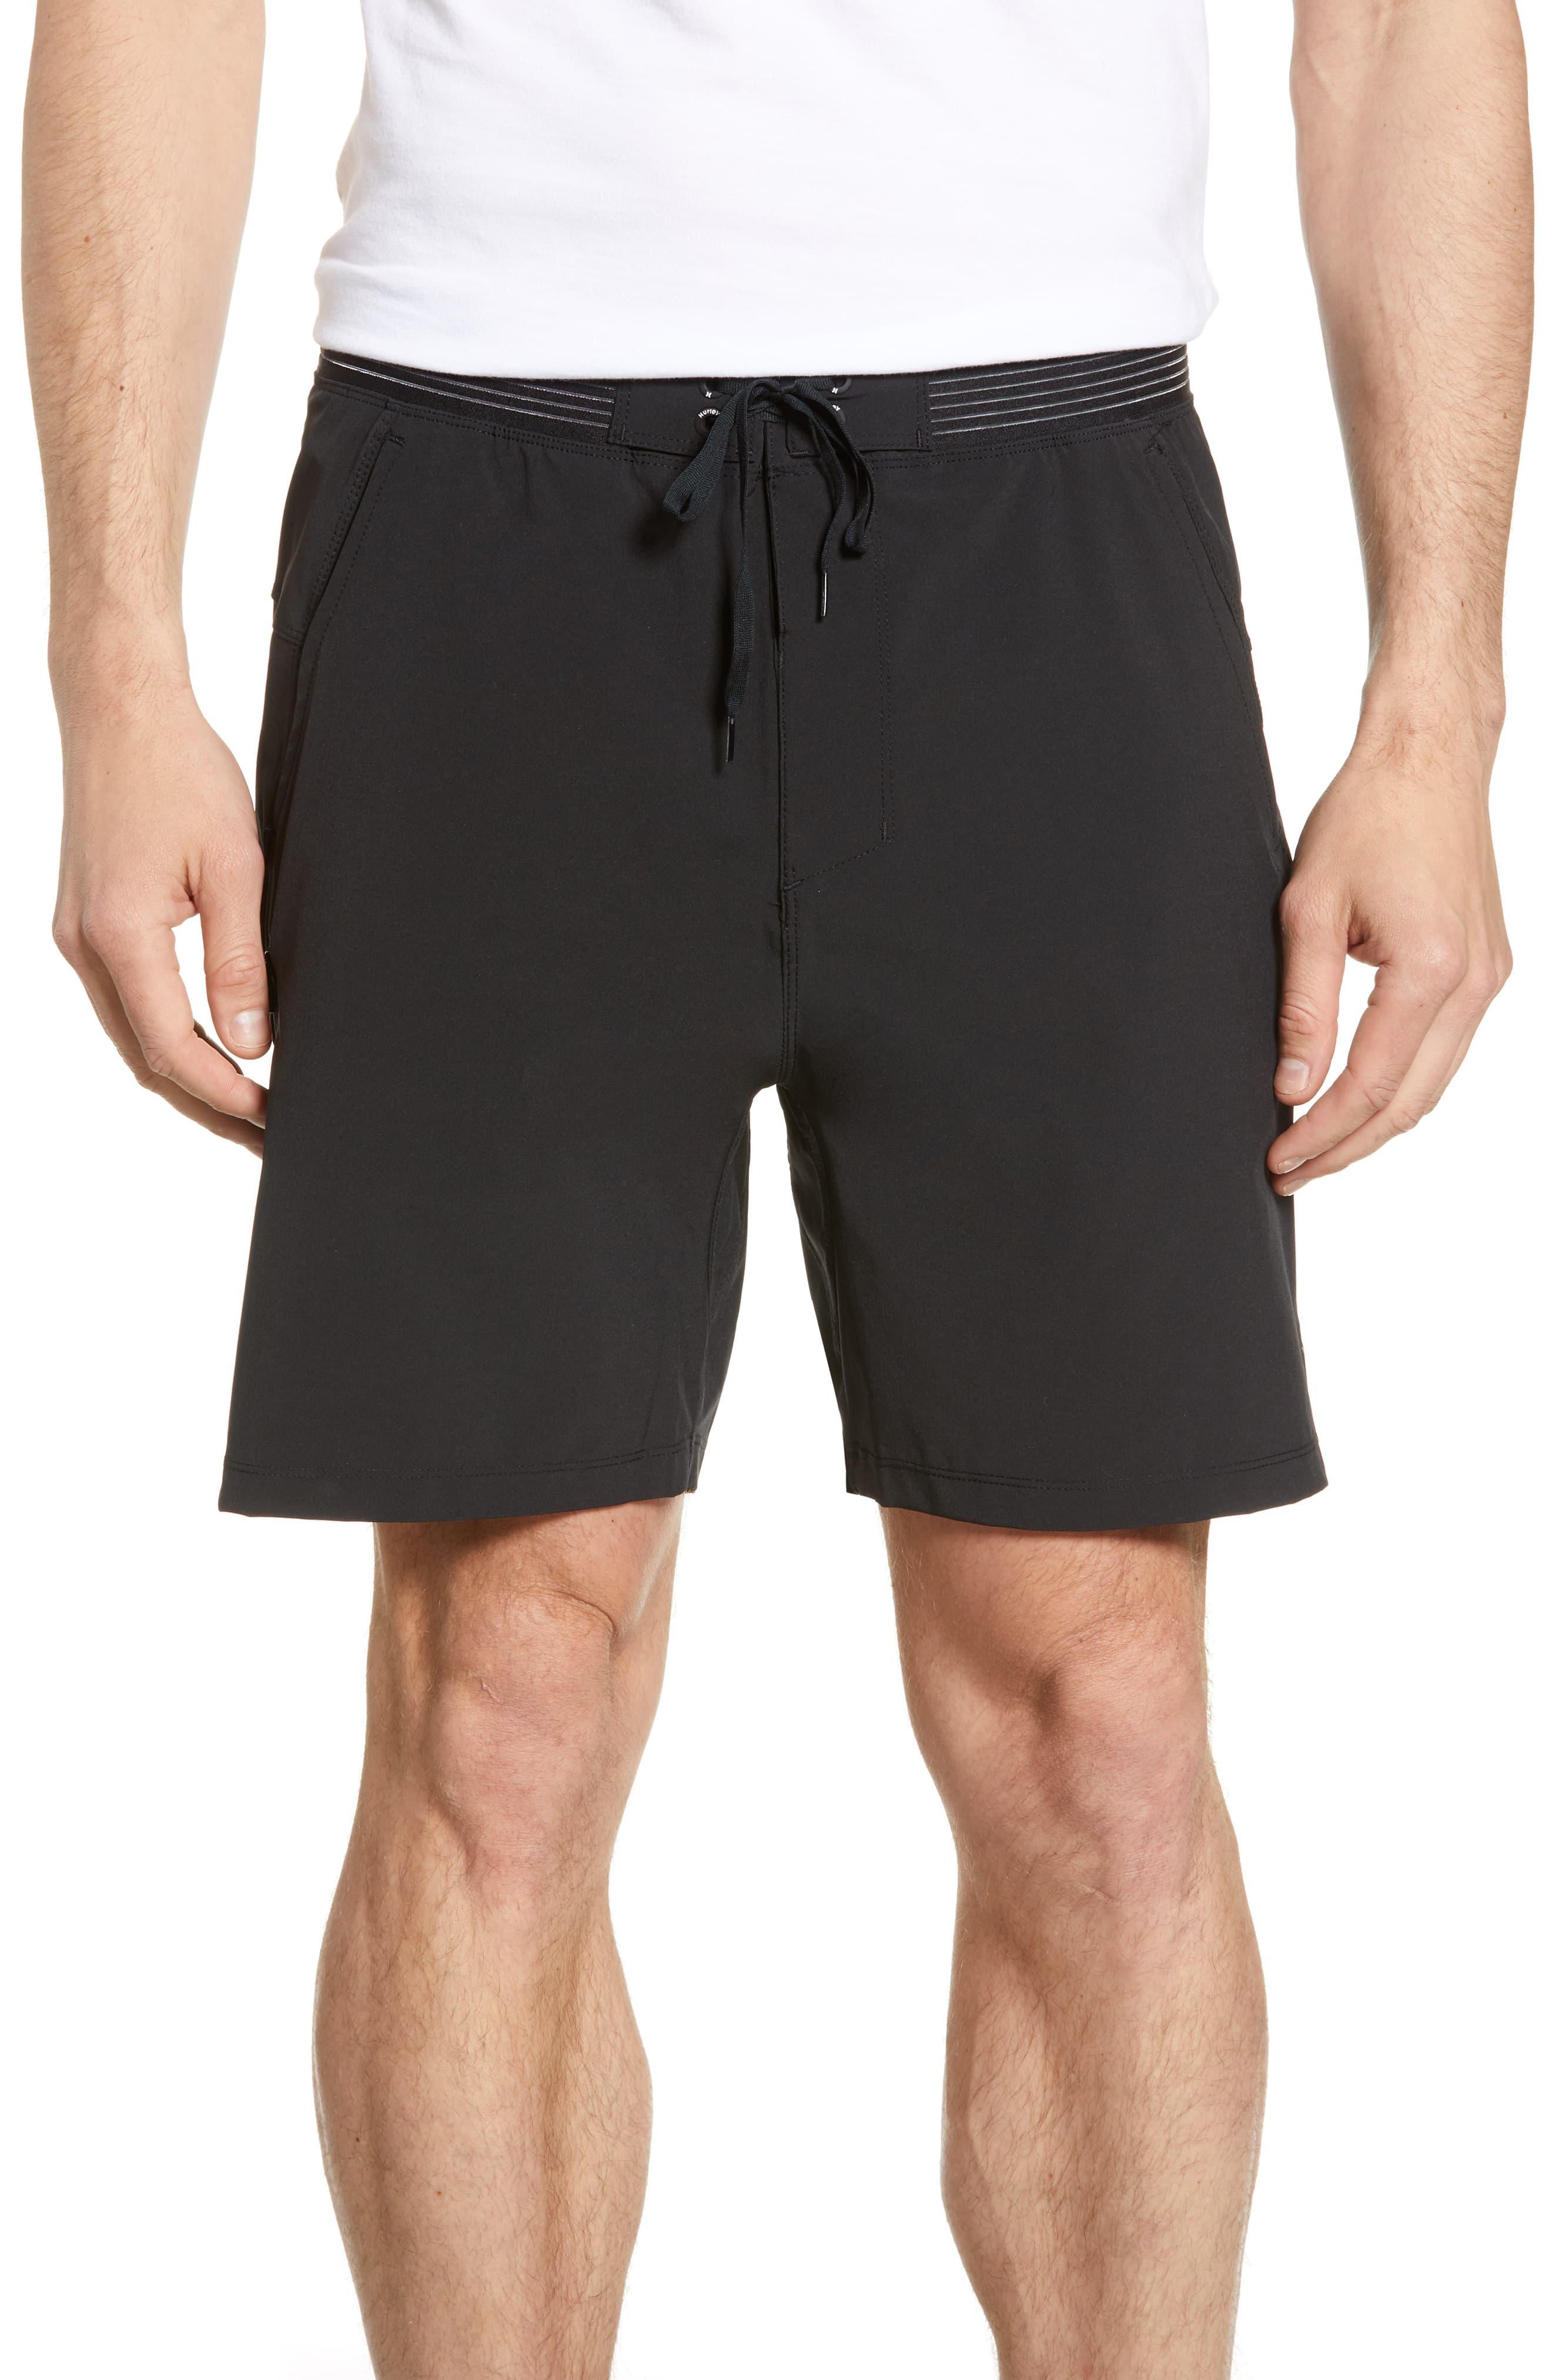 Hurley Phantom Alpha Trainer Hybrid Shorts in Black for Men - Lyst